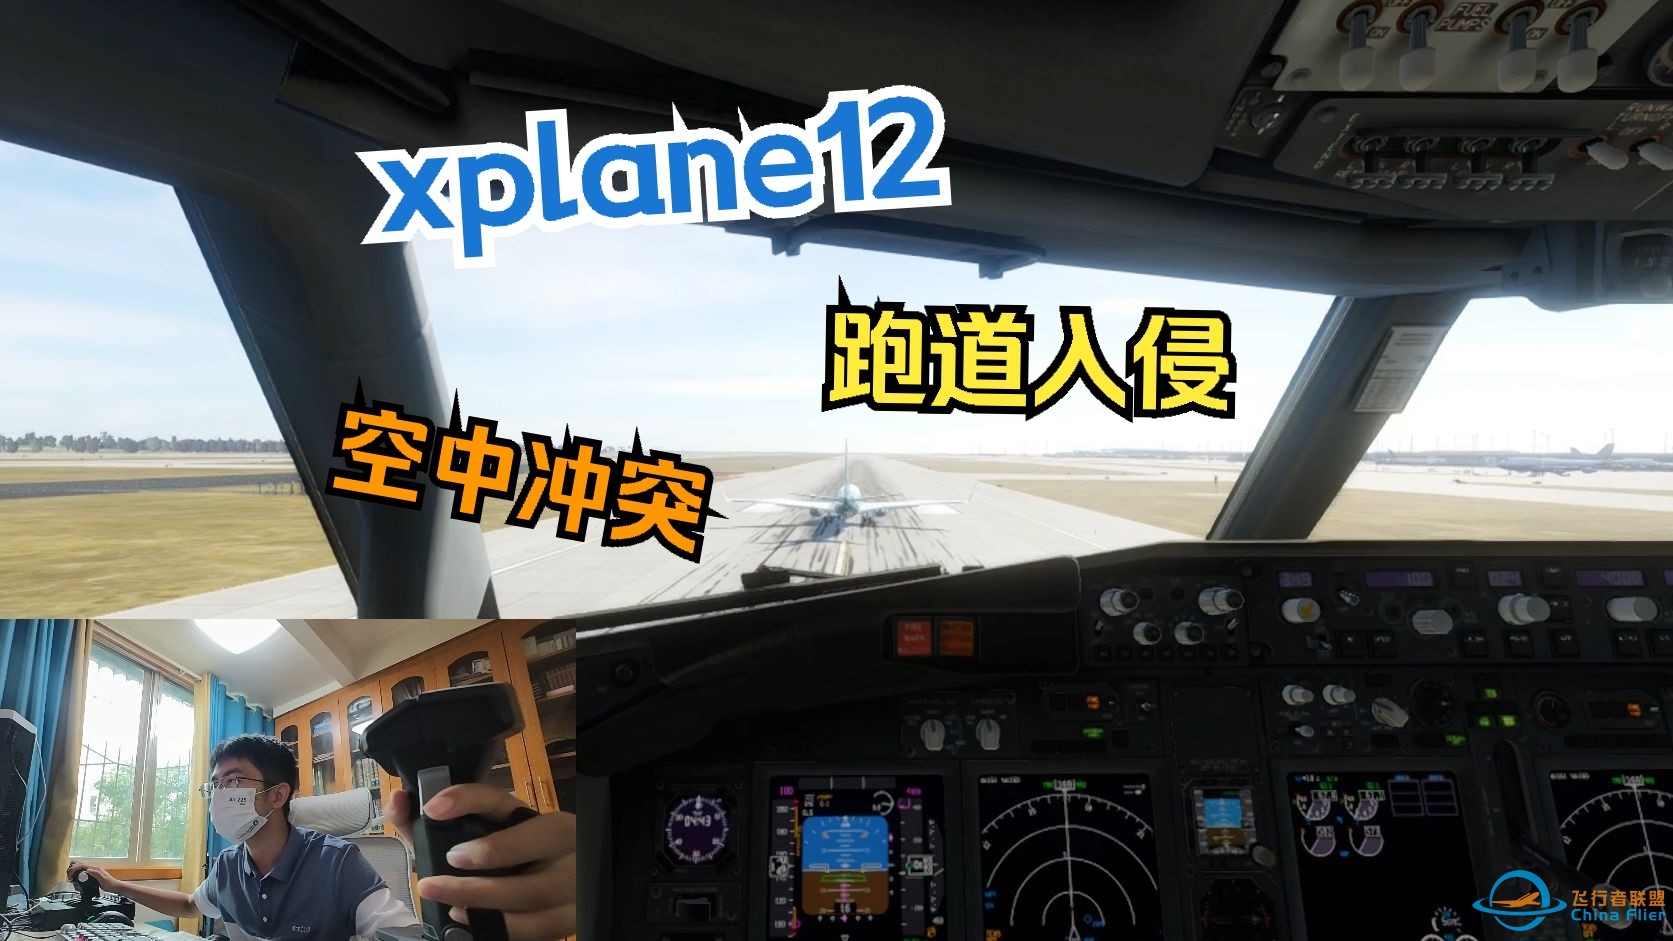 xplane12的有趣故障设置：跑道入侵和空中交通冲突-9809 